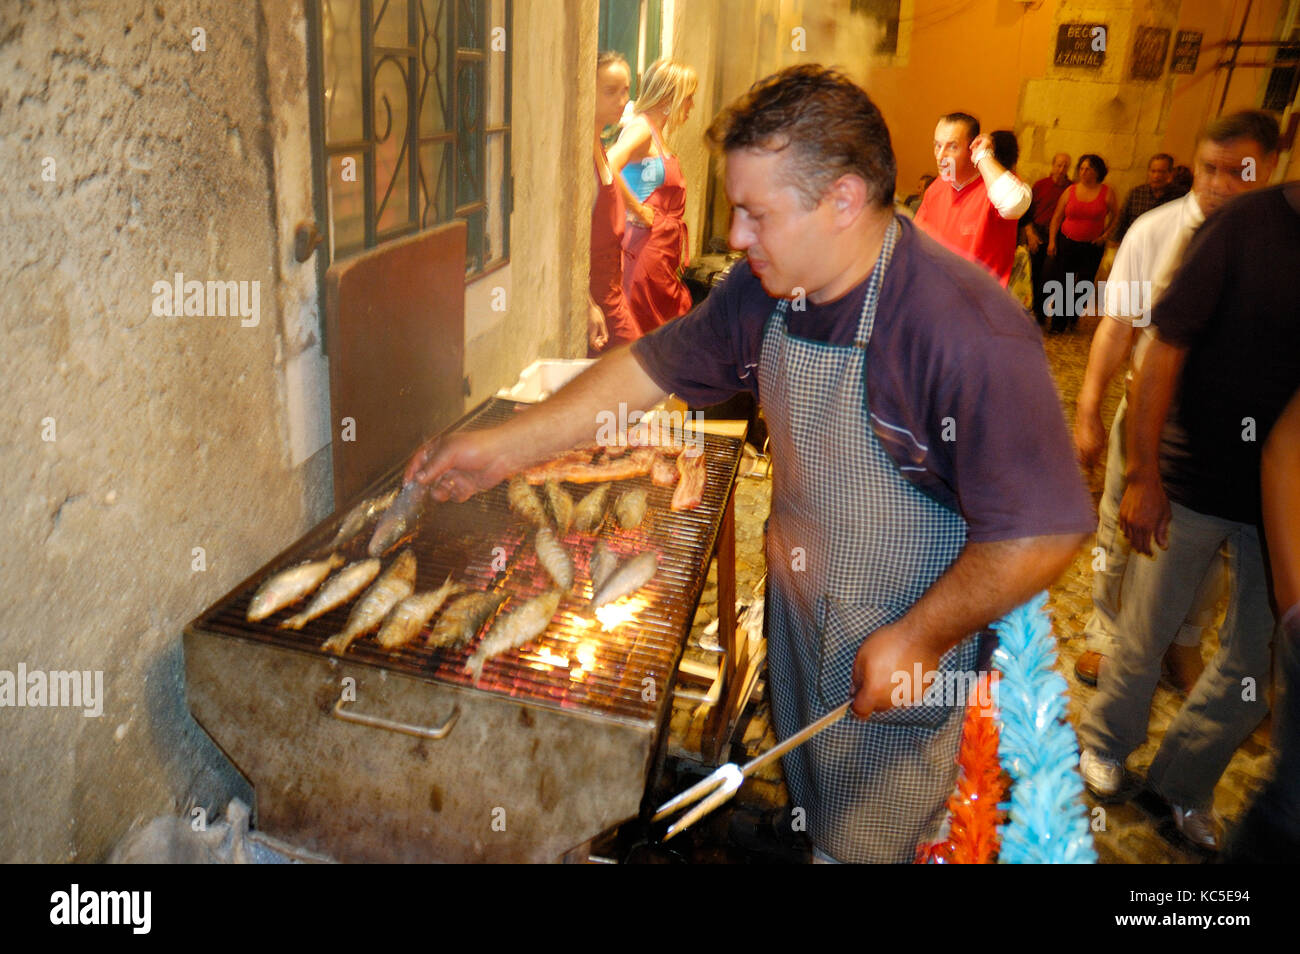 Des sardines grillées aux festivités de Santo António dans le quartier d'Alfama. Lisbonne, Portugal Banque D'Images